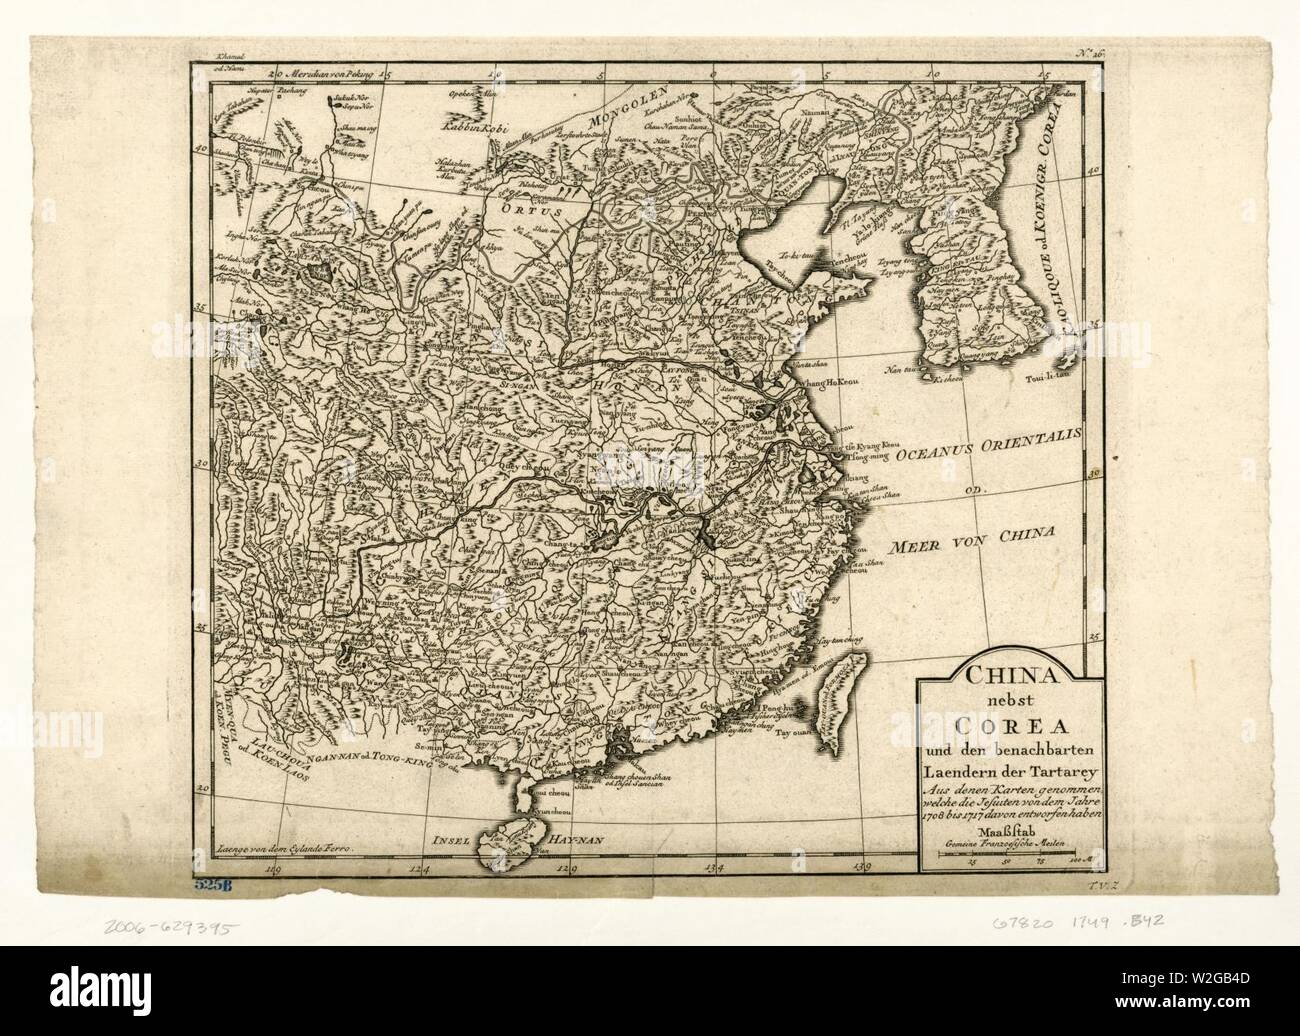 China nebst Corea und den benachbarten Laendern der Tartary aus denen Karten genommen, welche die Jesuiten von dem Jahre 1708 bis 1717 davon entworfen haben. Stock Photo